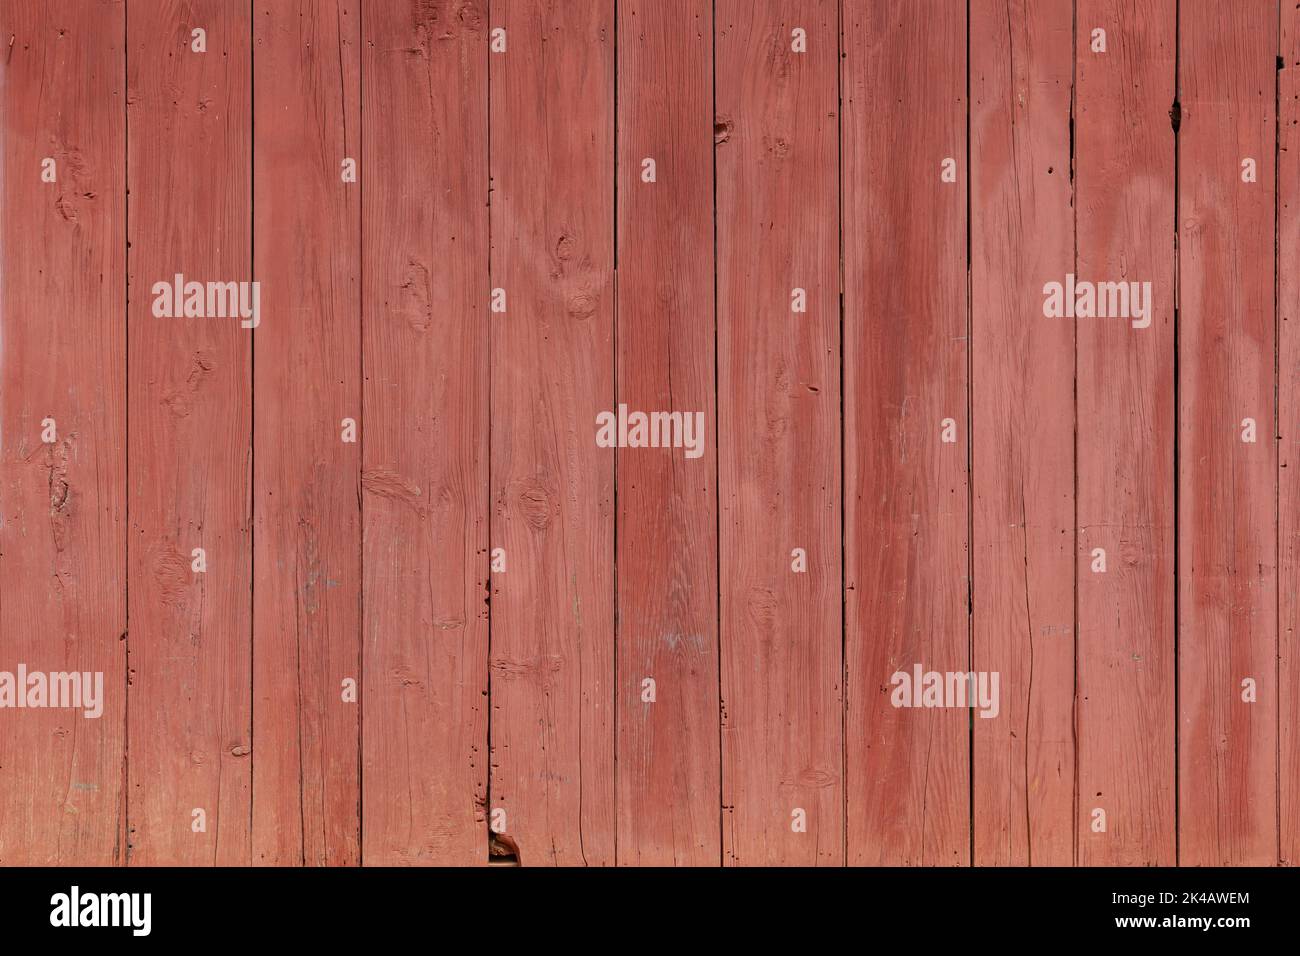 Rote Holz Textur der Planken Hintergrund Stockfoto